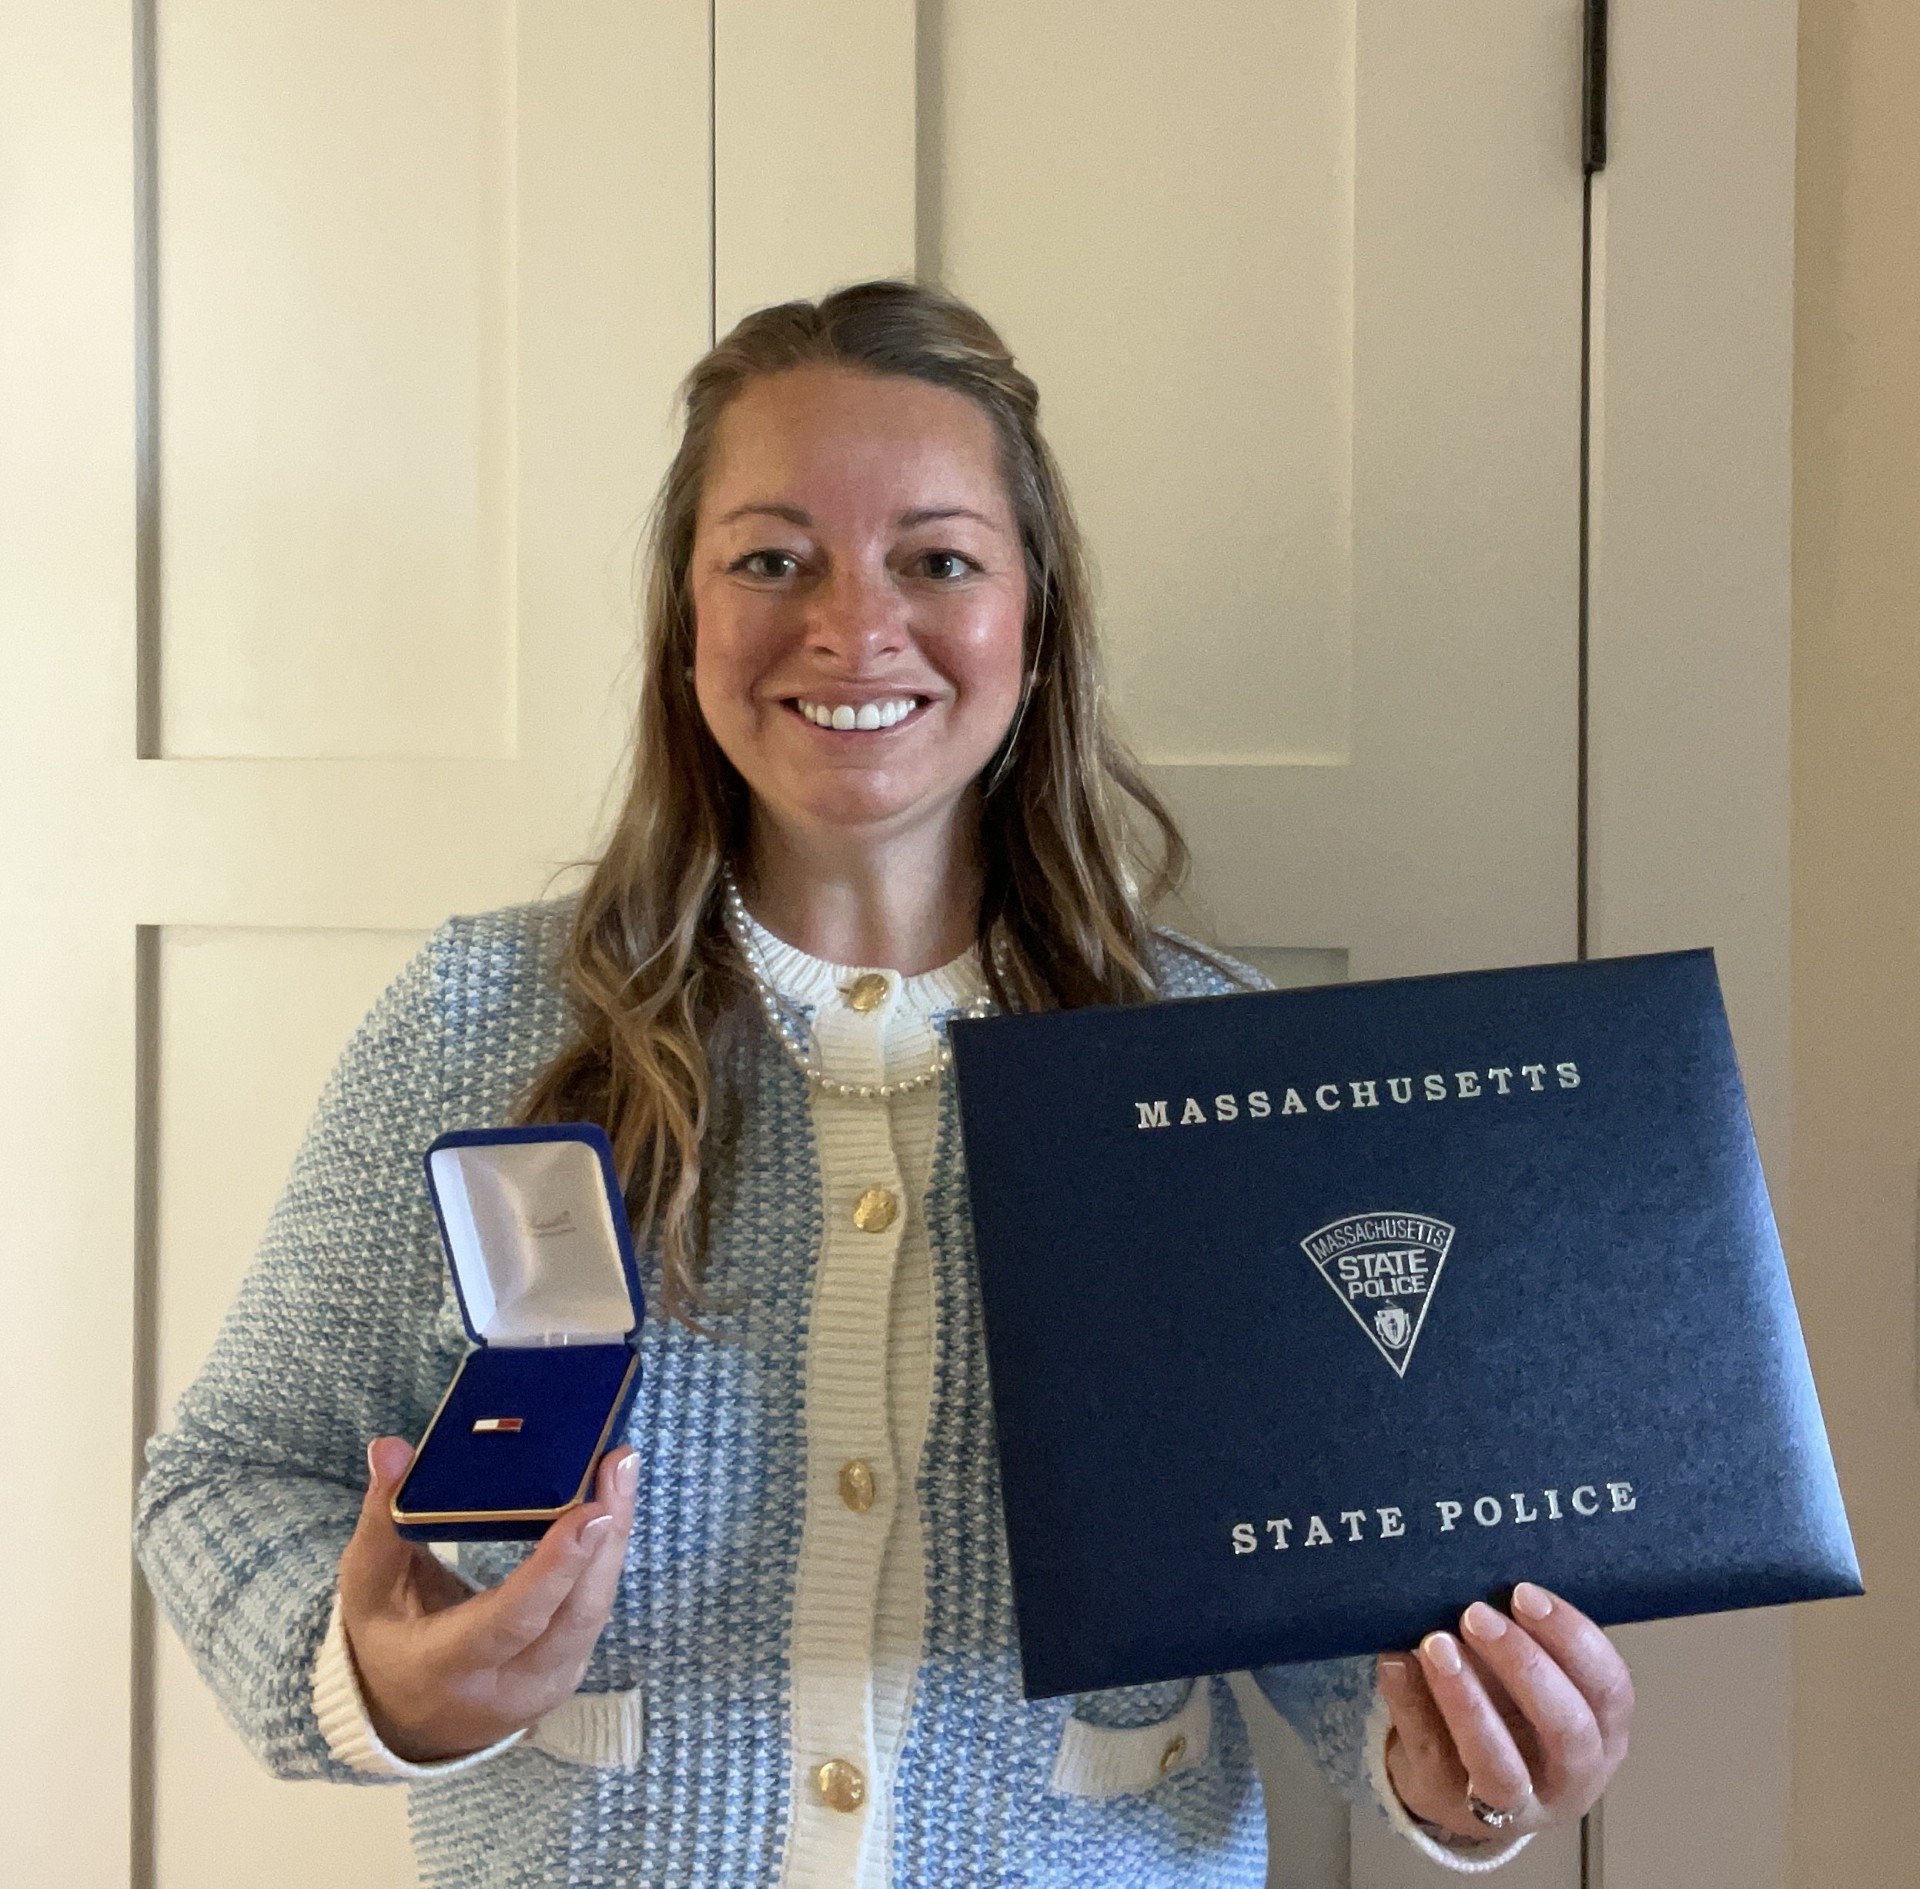 Laura Kelley holds her Massachusetts State Police Lifesaving Award.